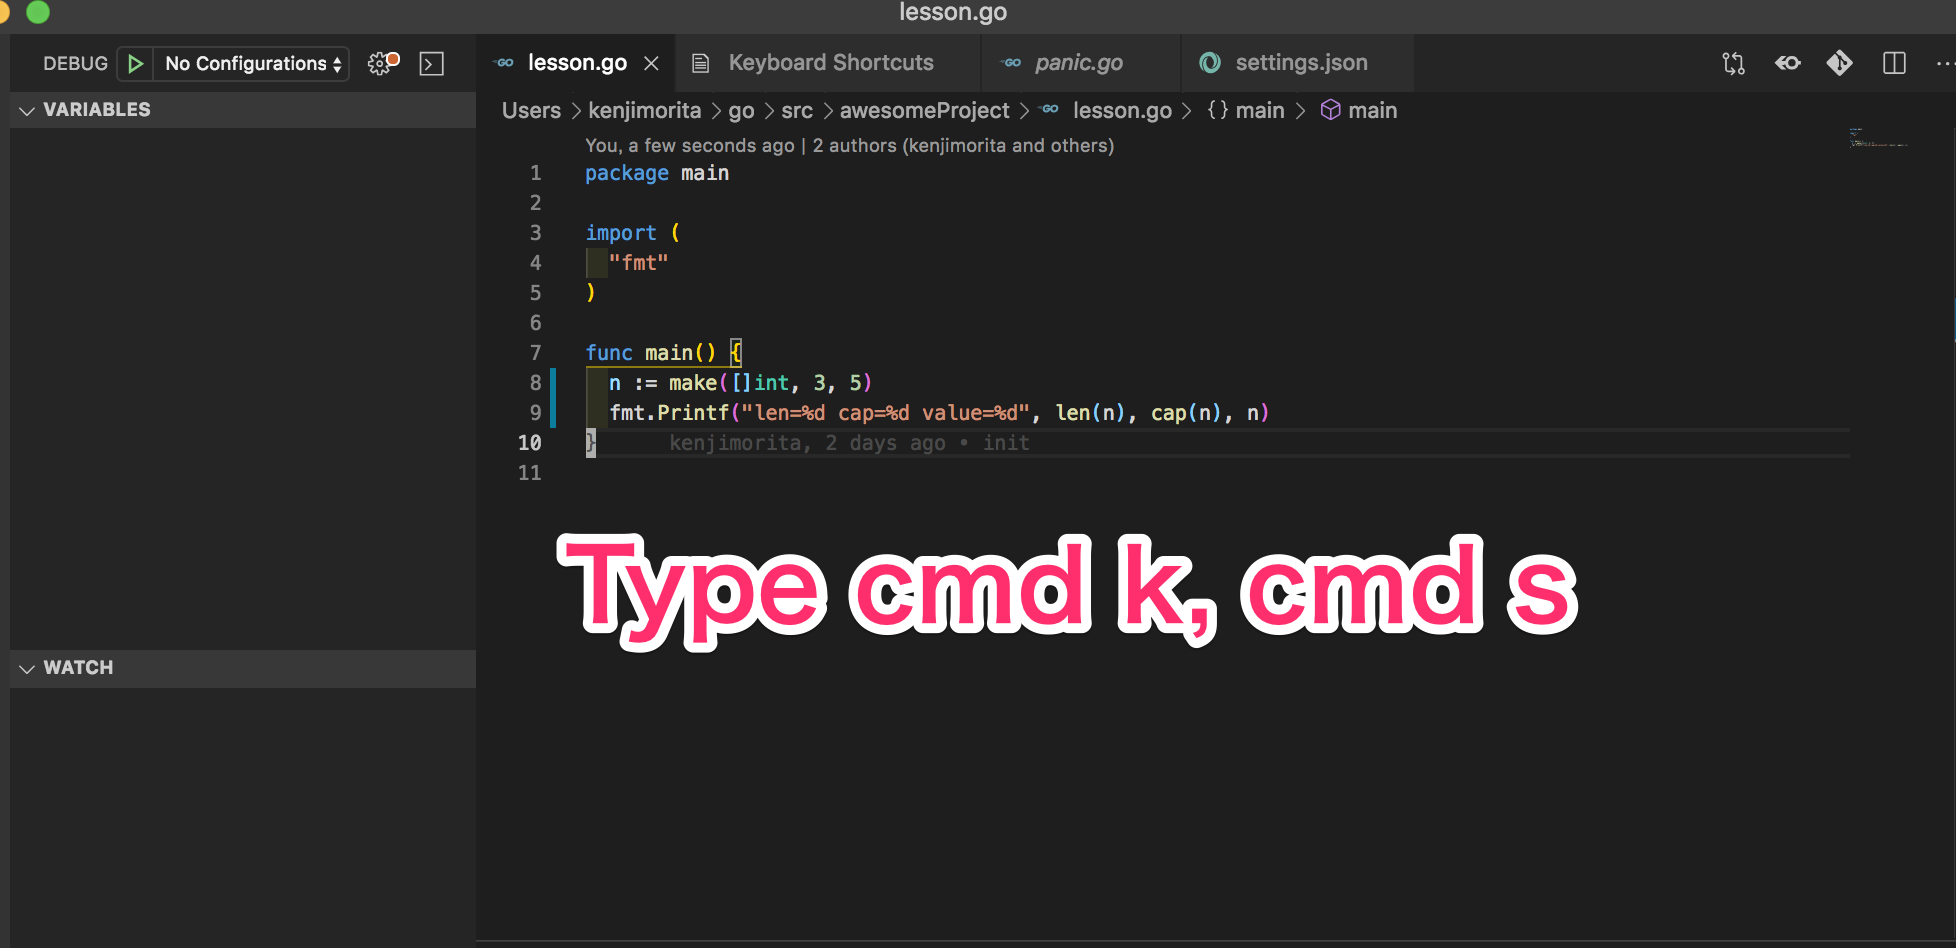 type cmd k, cmd d 【Golang】VSCodeでファイル実行のF5を変えたいdebugg時つらいから